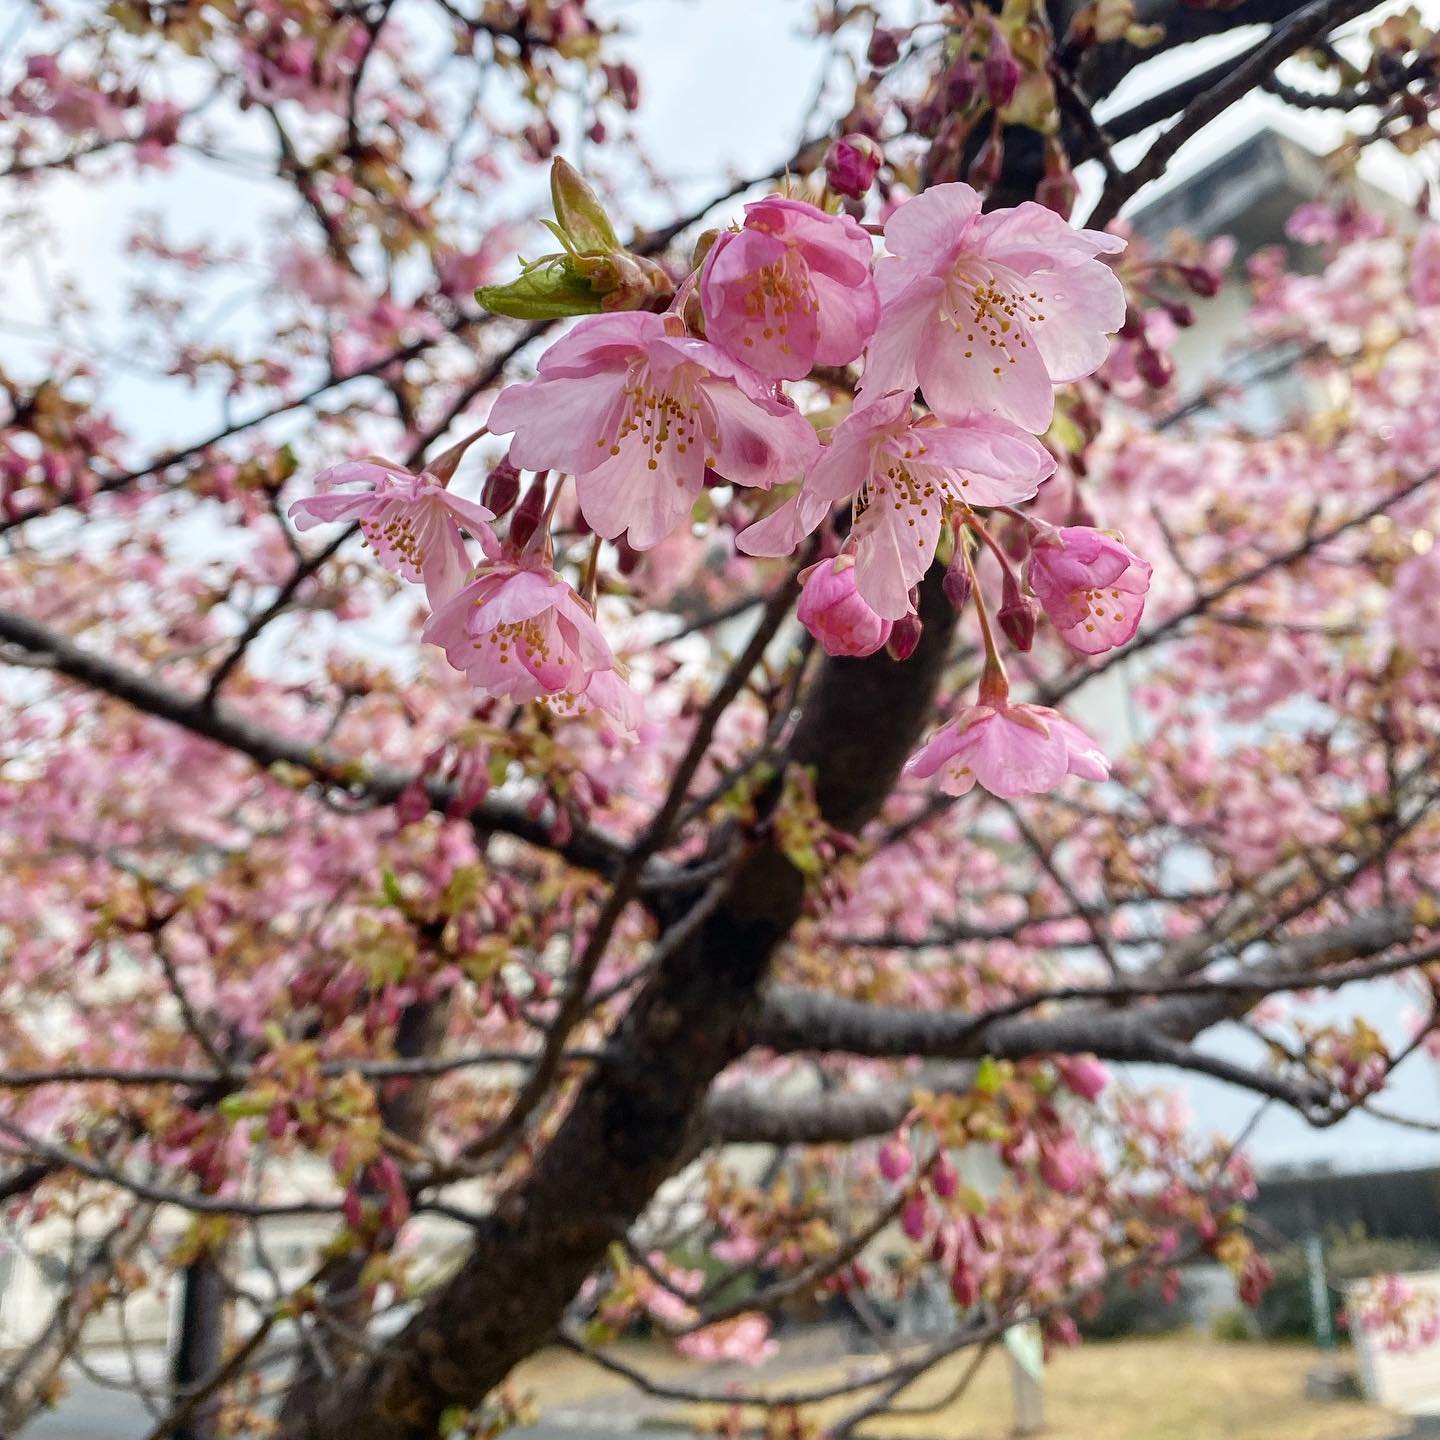 昨日今日と、お仕事で愛媛大学にお邪魔してました。朝早く集合してのお仕事で、眠い目をこすりつつ移動していたら、学内に桜が咲いているのを発見！ソメイヨシノとは違う早咲き桜な品種と思いますが、キレイに咲いてました！あぁ、春はもうすぐそこまで来てるのですね、どうりで鼻がむずがゆく目がかゆいはずだ（それな）。